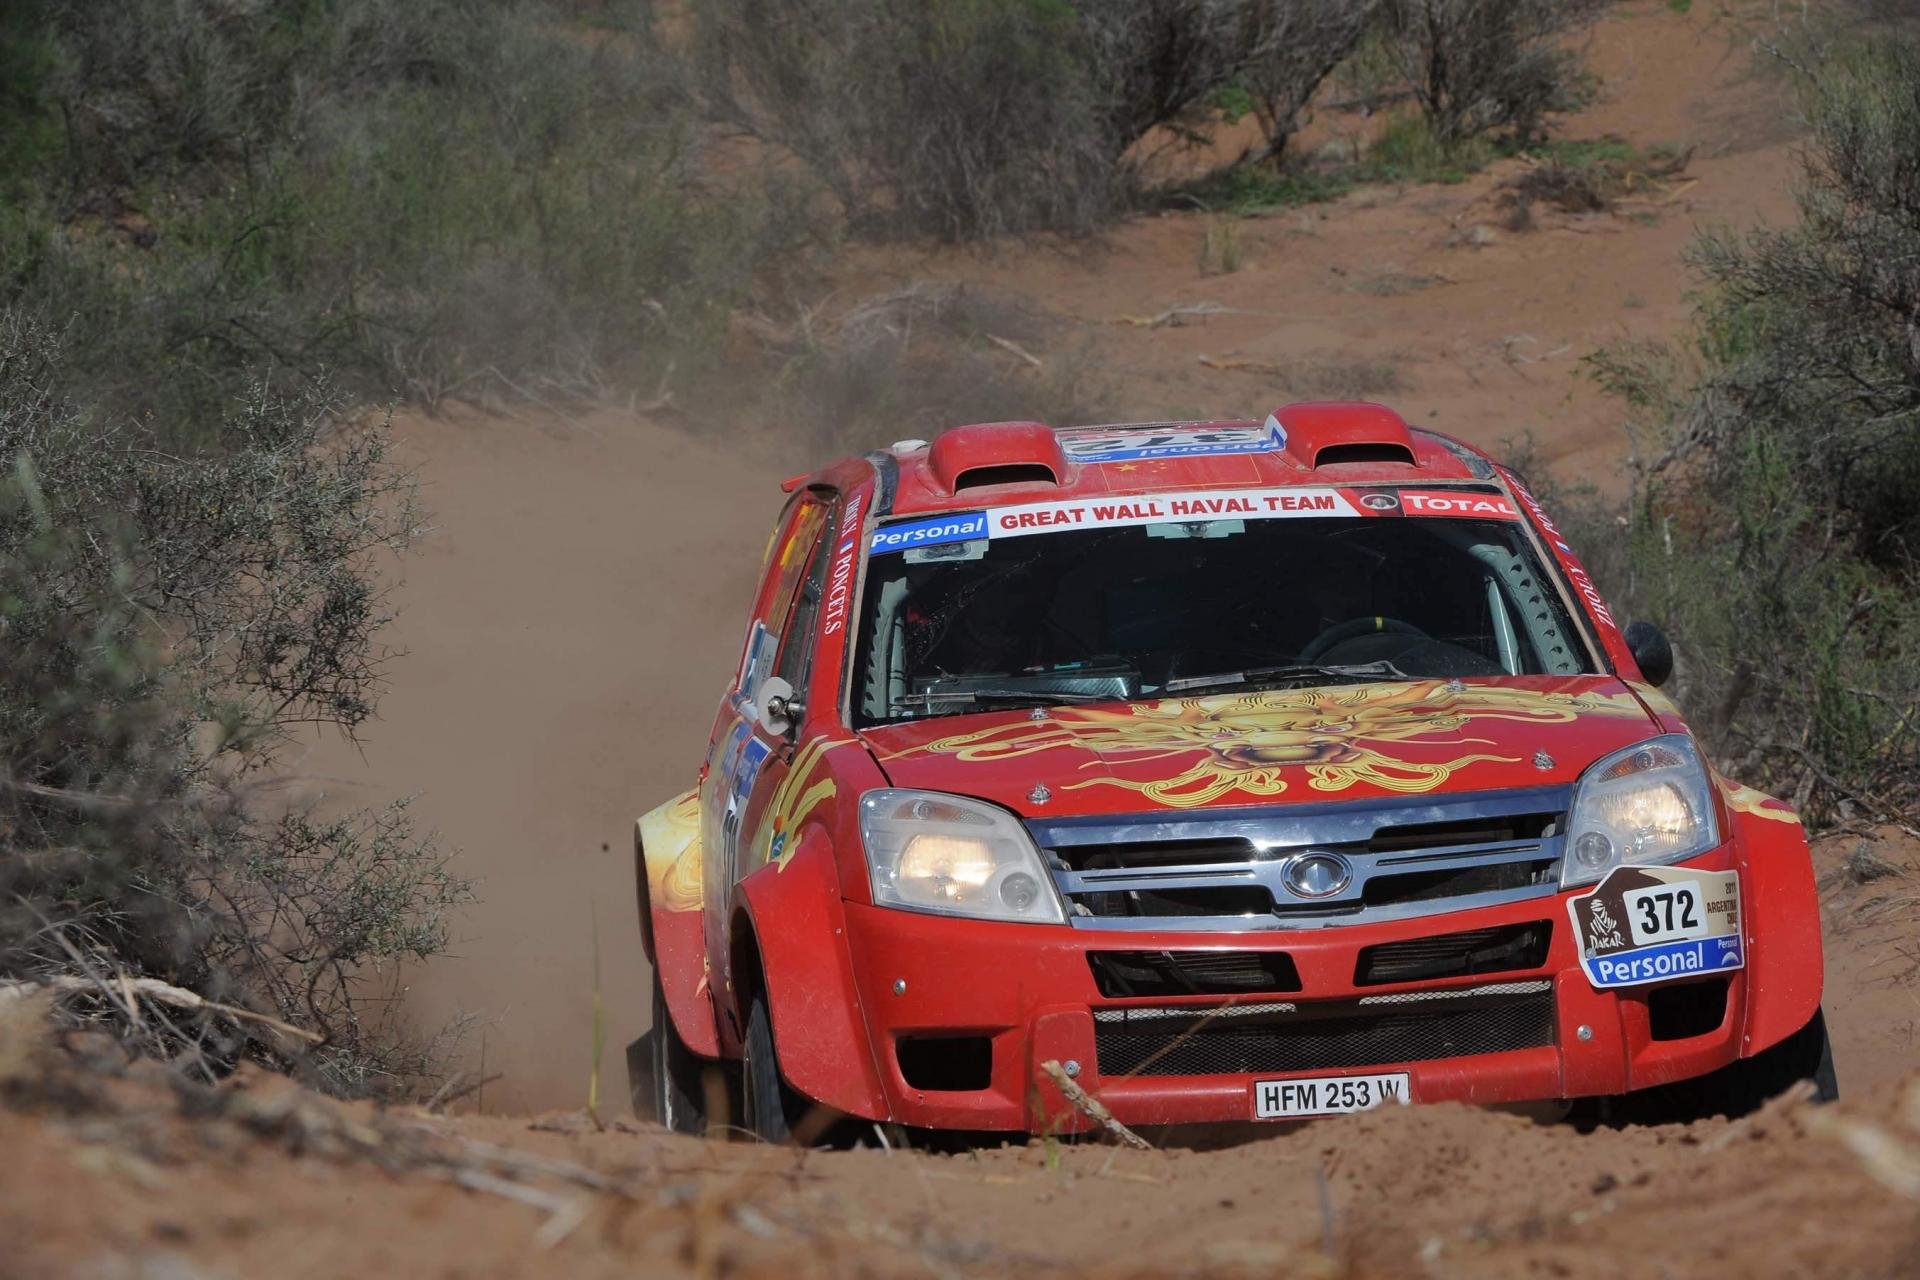 Best Dakar Rally wallpaper ID:321433 for High Resolution hd 1920x1280 PC